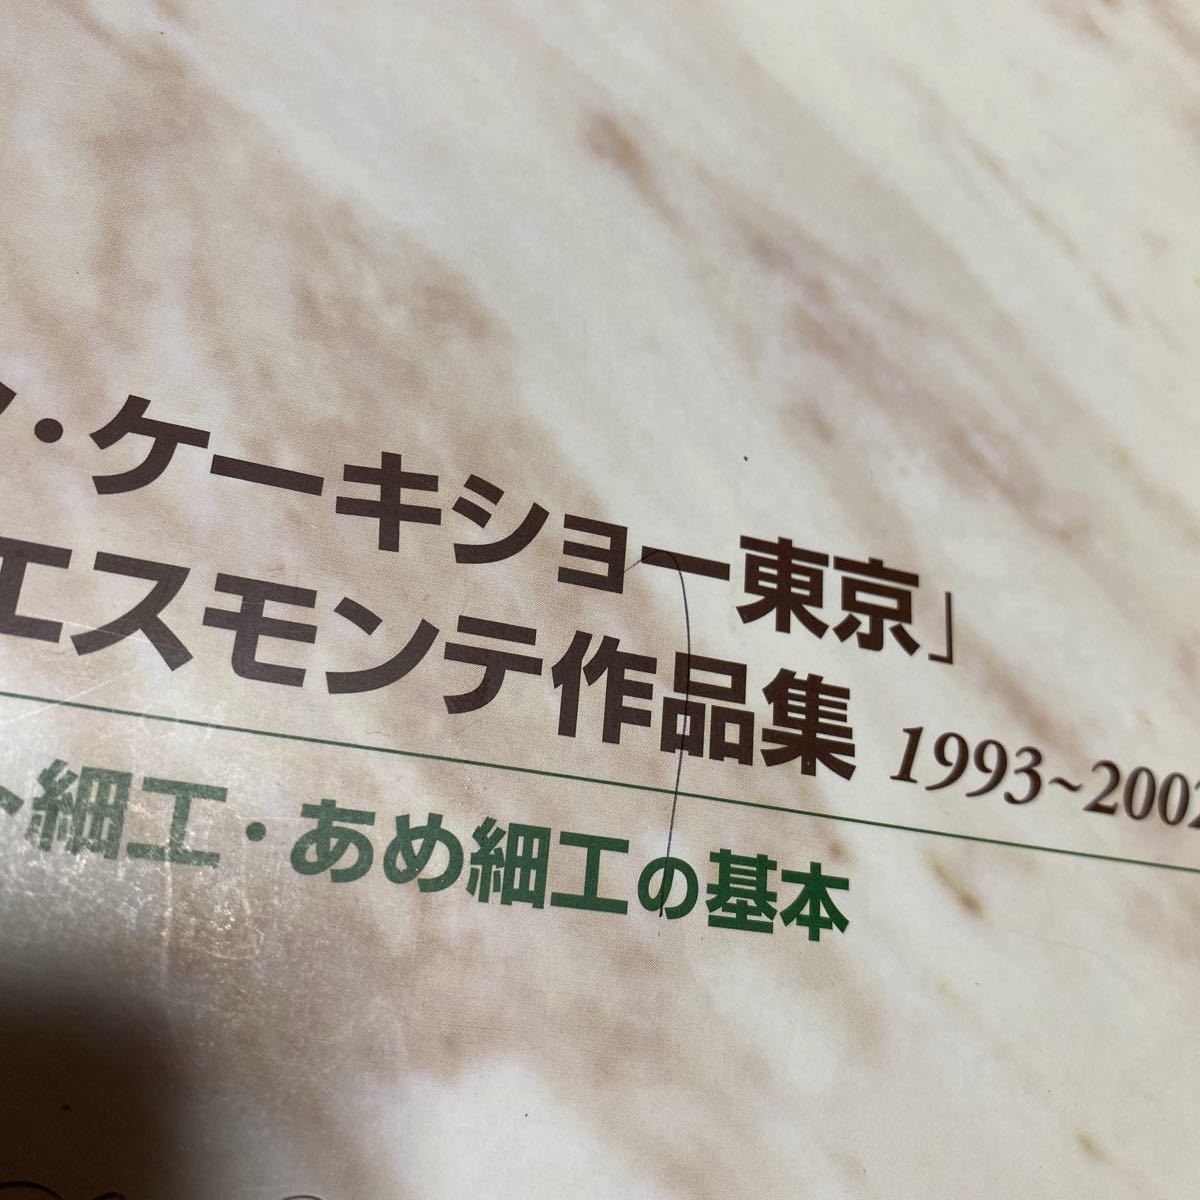 ジャパンケーキショー東京 大型ピエスモンテ作品集 1993-2002